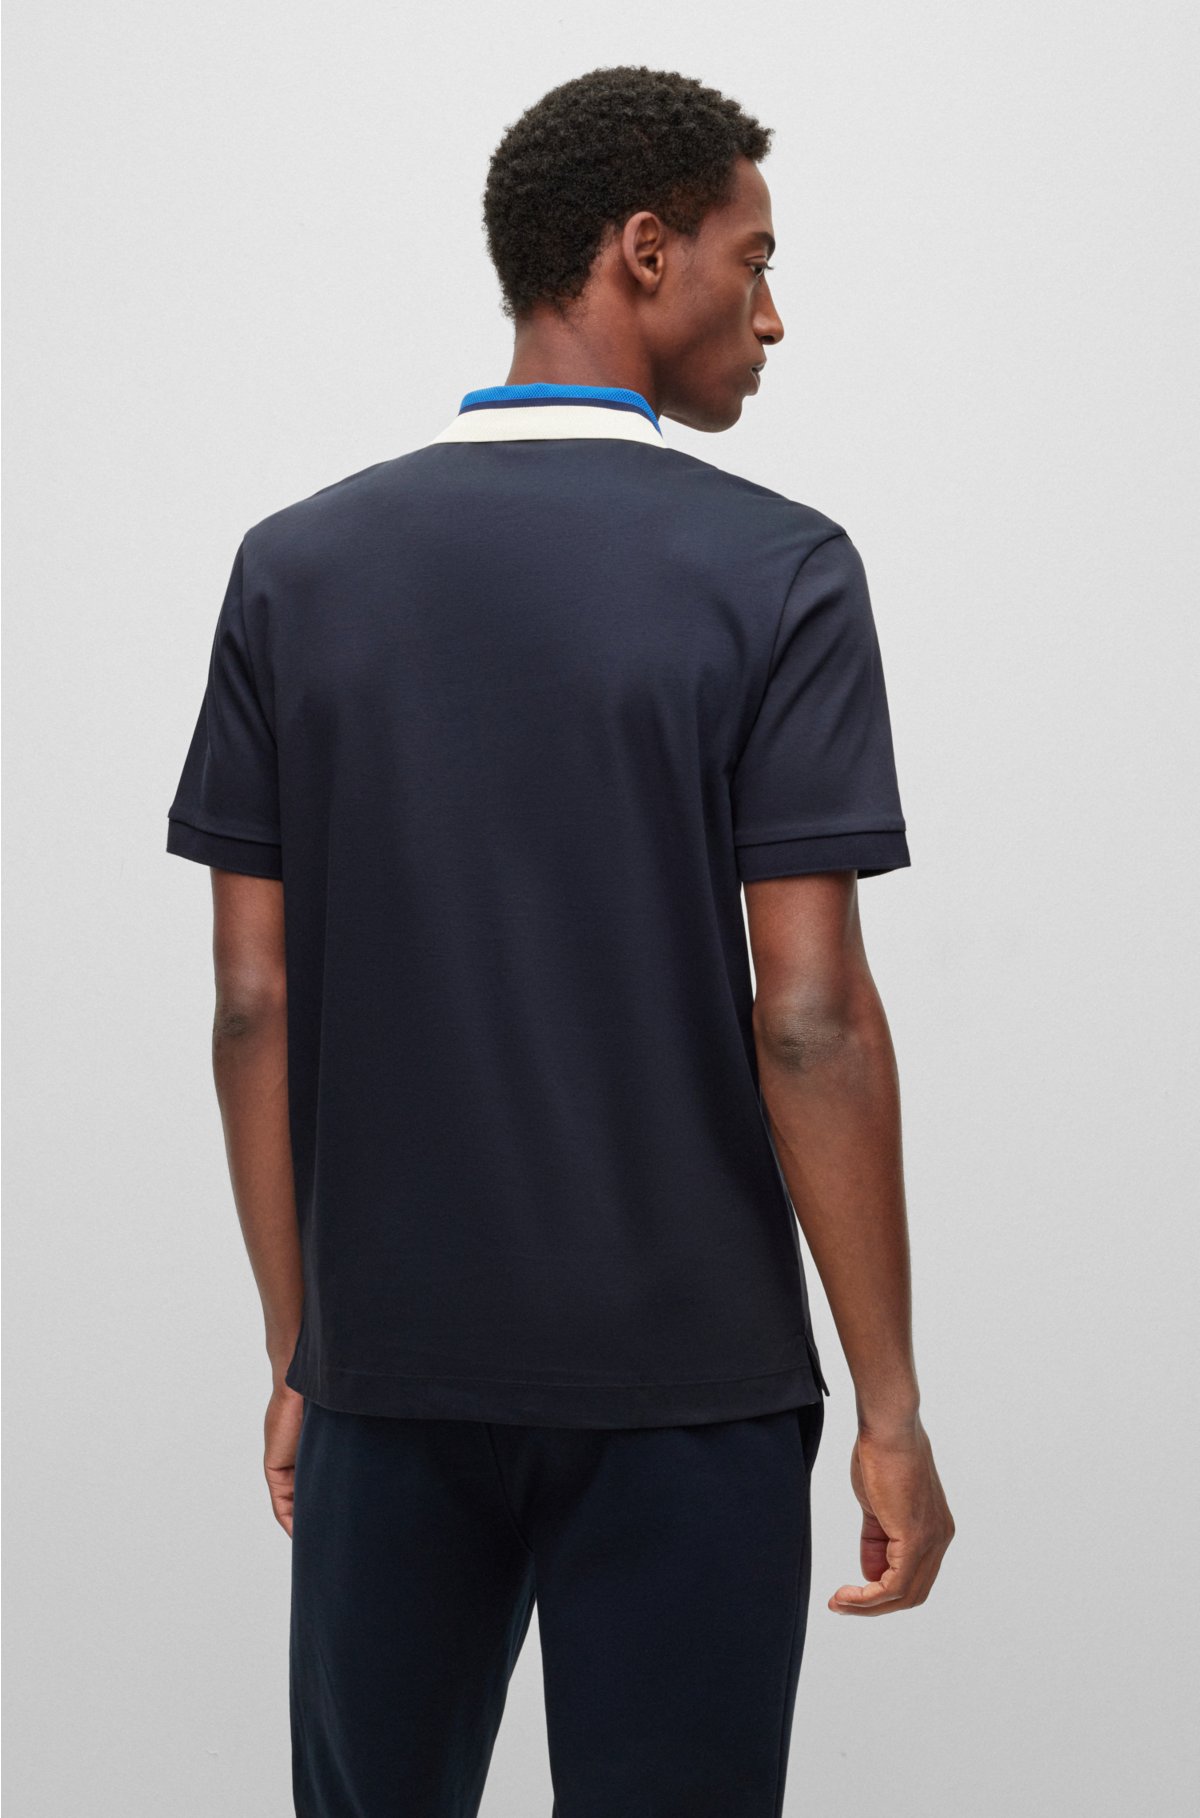 Lacoste Colour Block Polo T Shirt Black - Male - 7 (XXXL)